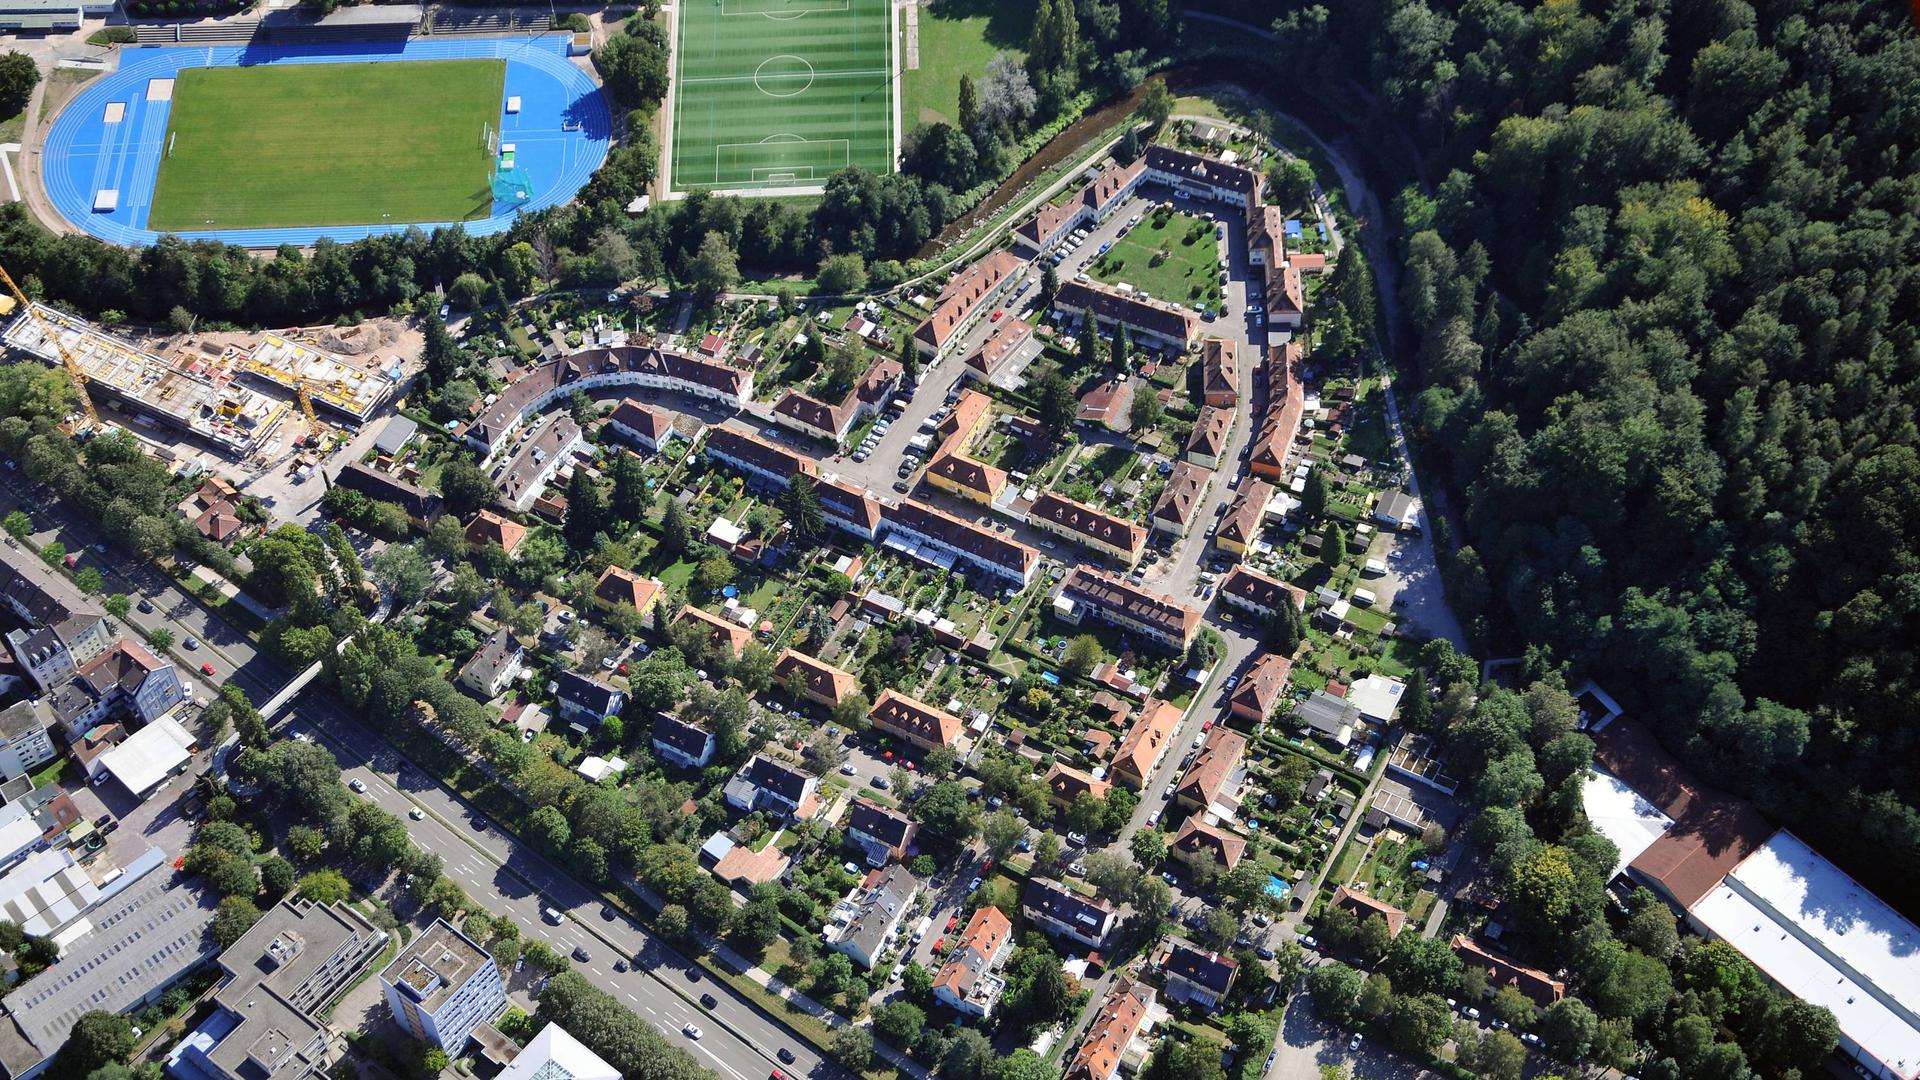 Nach Art einer Gartenstadt wurde der Ooswinkel vor rund 100 Jahren bebaut. Jetzt wurden im Erdreich von weiteren Grundstücken der Siedlung nahe dem Aumatt-Stadion PFC nachgewiesen.